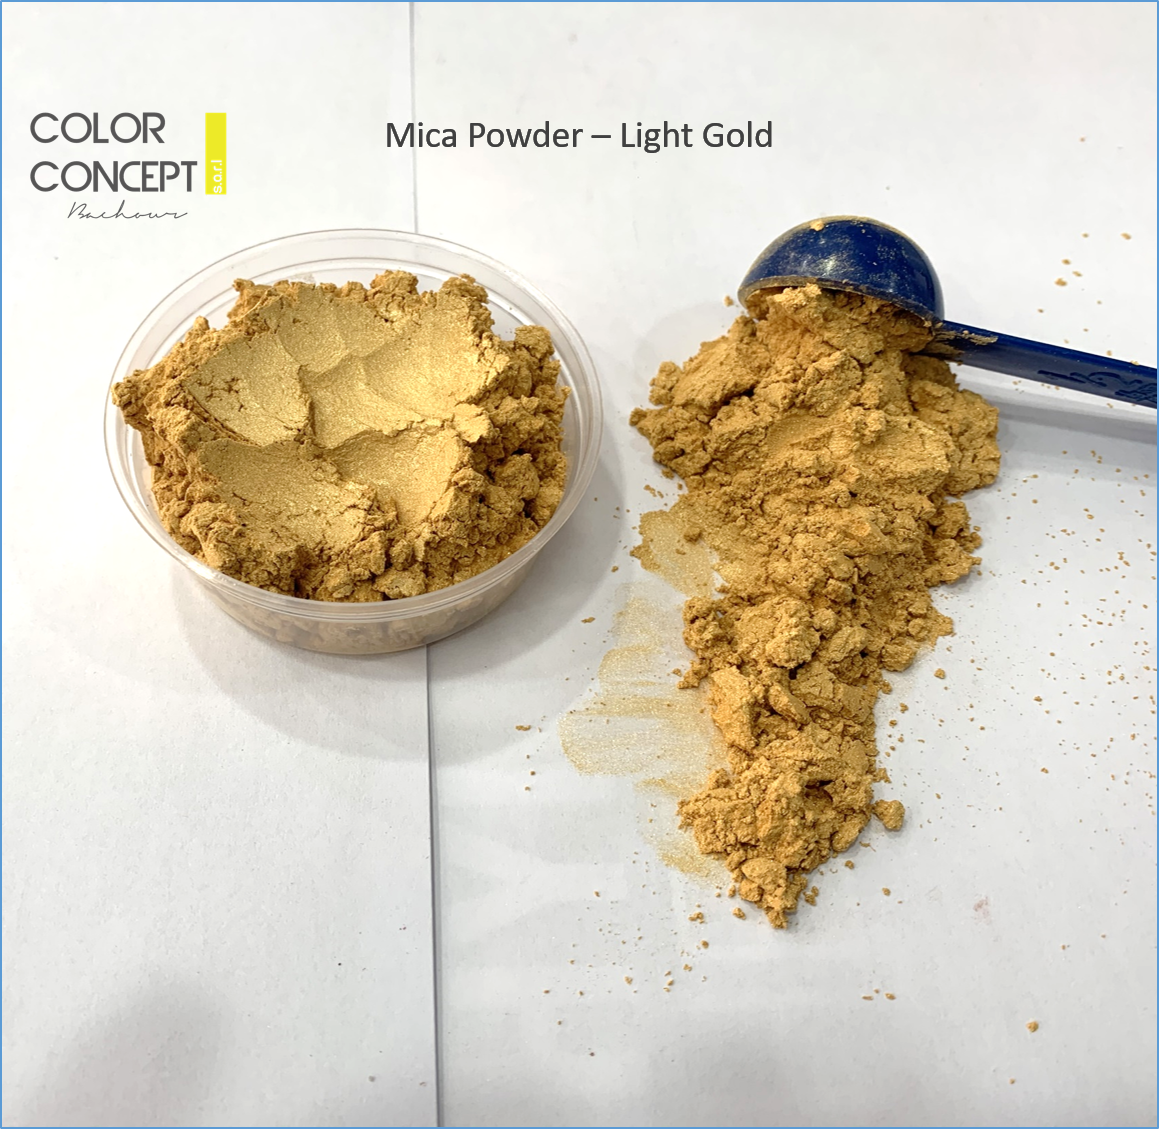 White Pearl - Epoxy Resin Color Pigment - Mica Powder 50g